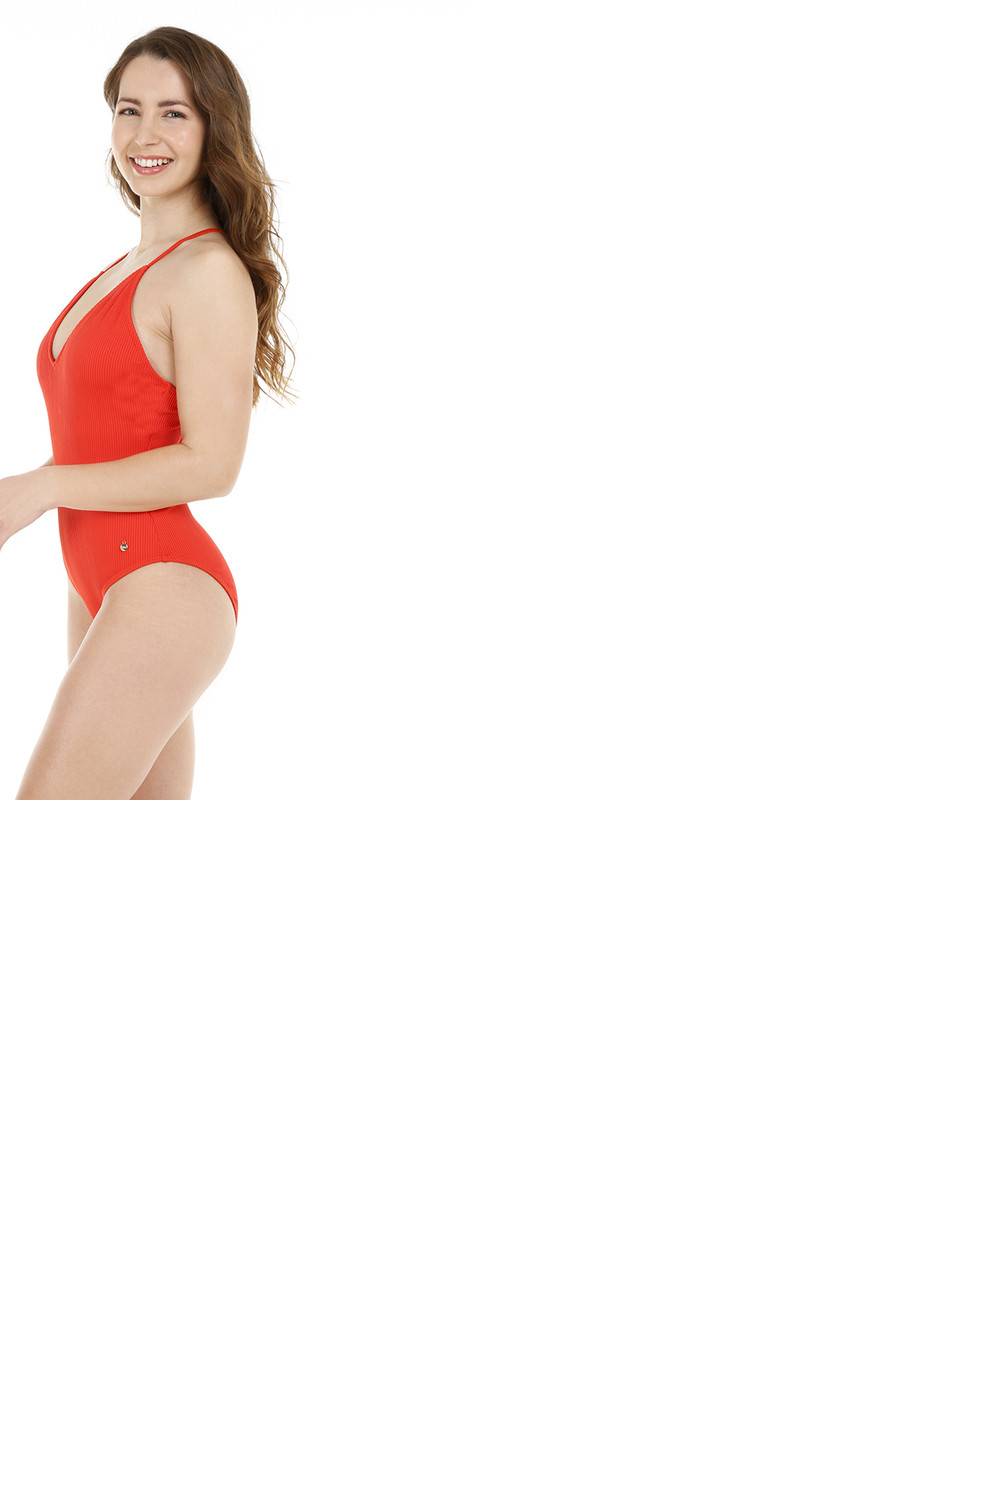 H2O WEAR - Mujer Traje de Baño Textura Rib Rojo